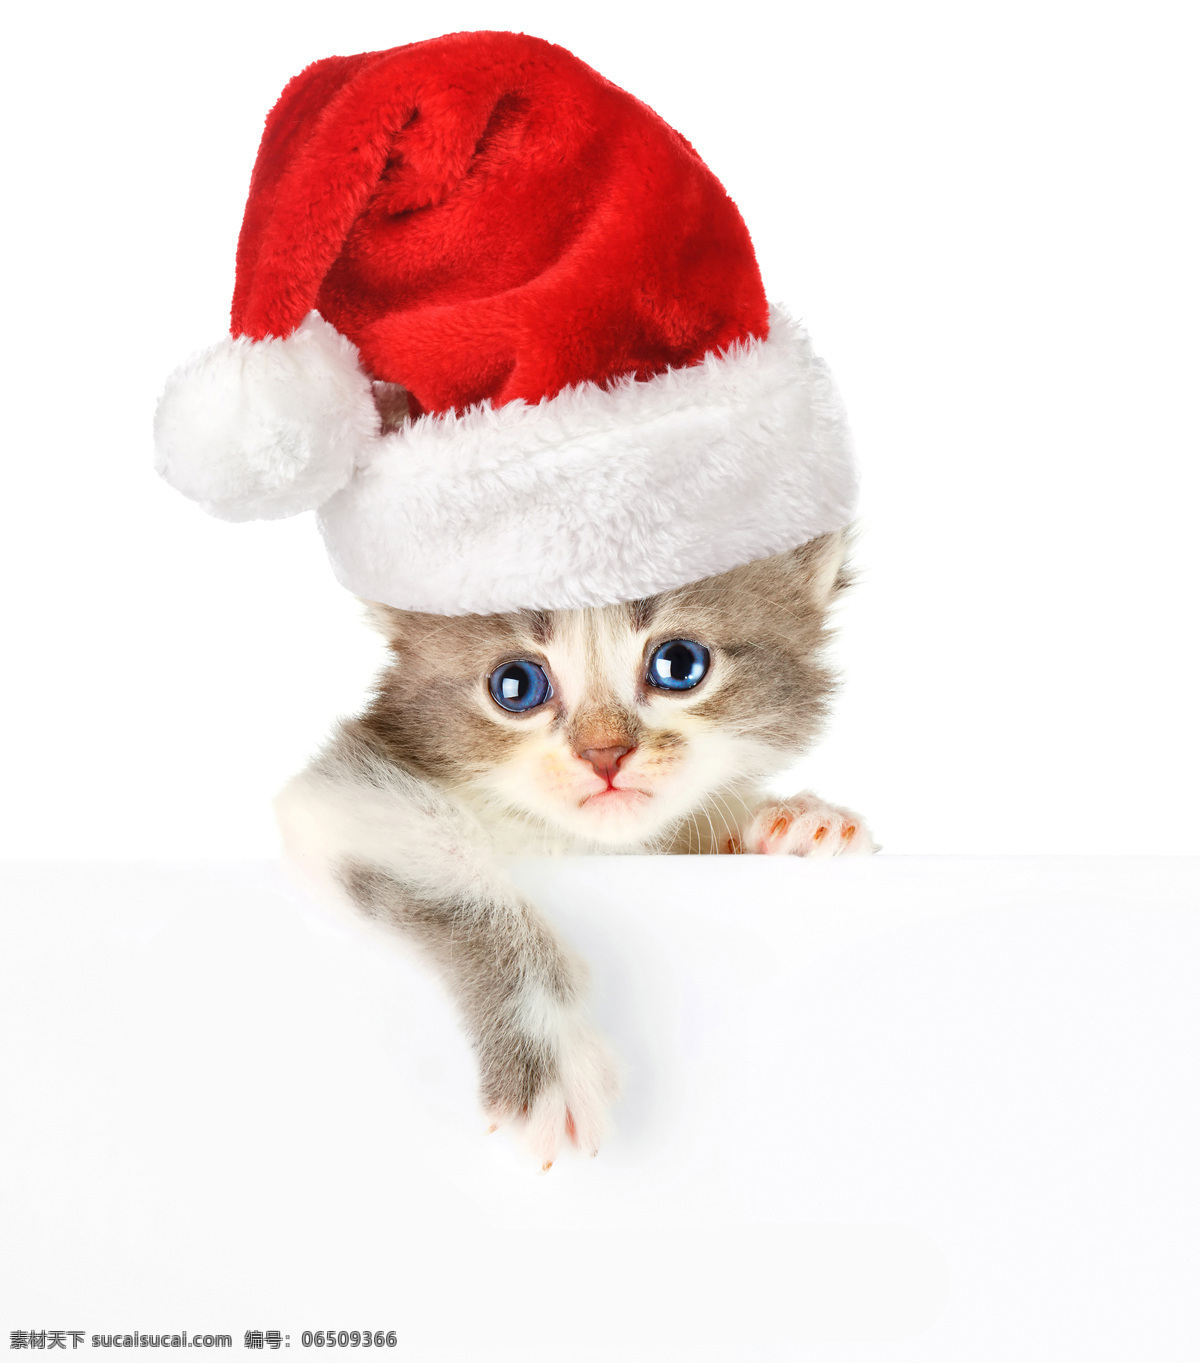 戴帽子 小猫 圣诞动物 戴帽子的小猫 猫咪 动物世界 宠物 猫咪图片 生物世界